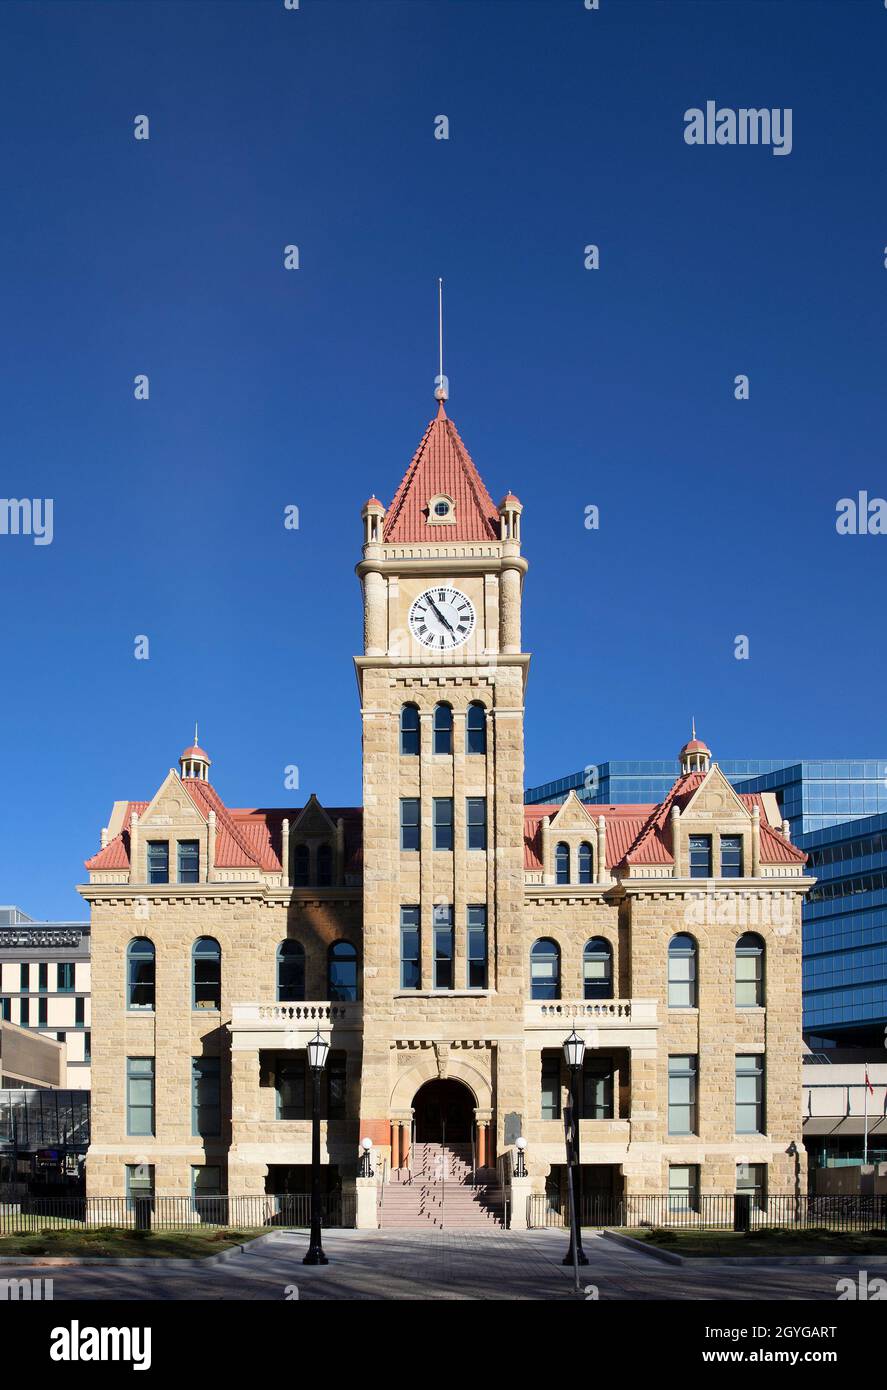 L'hôtel de ville de Calgary avec tour d'horloge, un édifice de 1911 en grès de Paskapoo, a été remis en état en 2020.Il a été désigné lieu historique national Banque D'Images